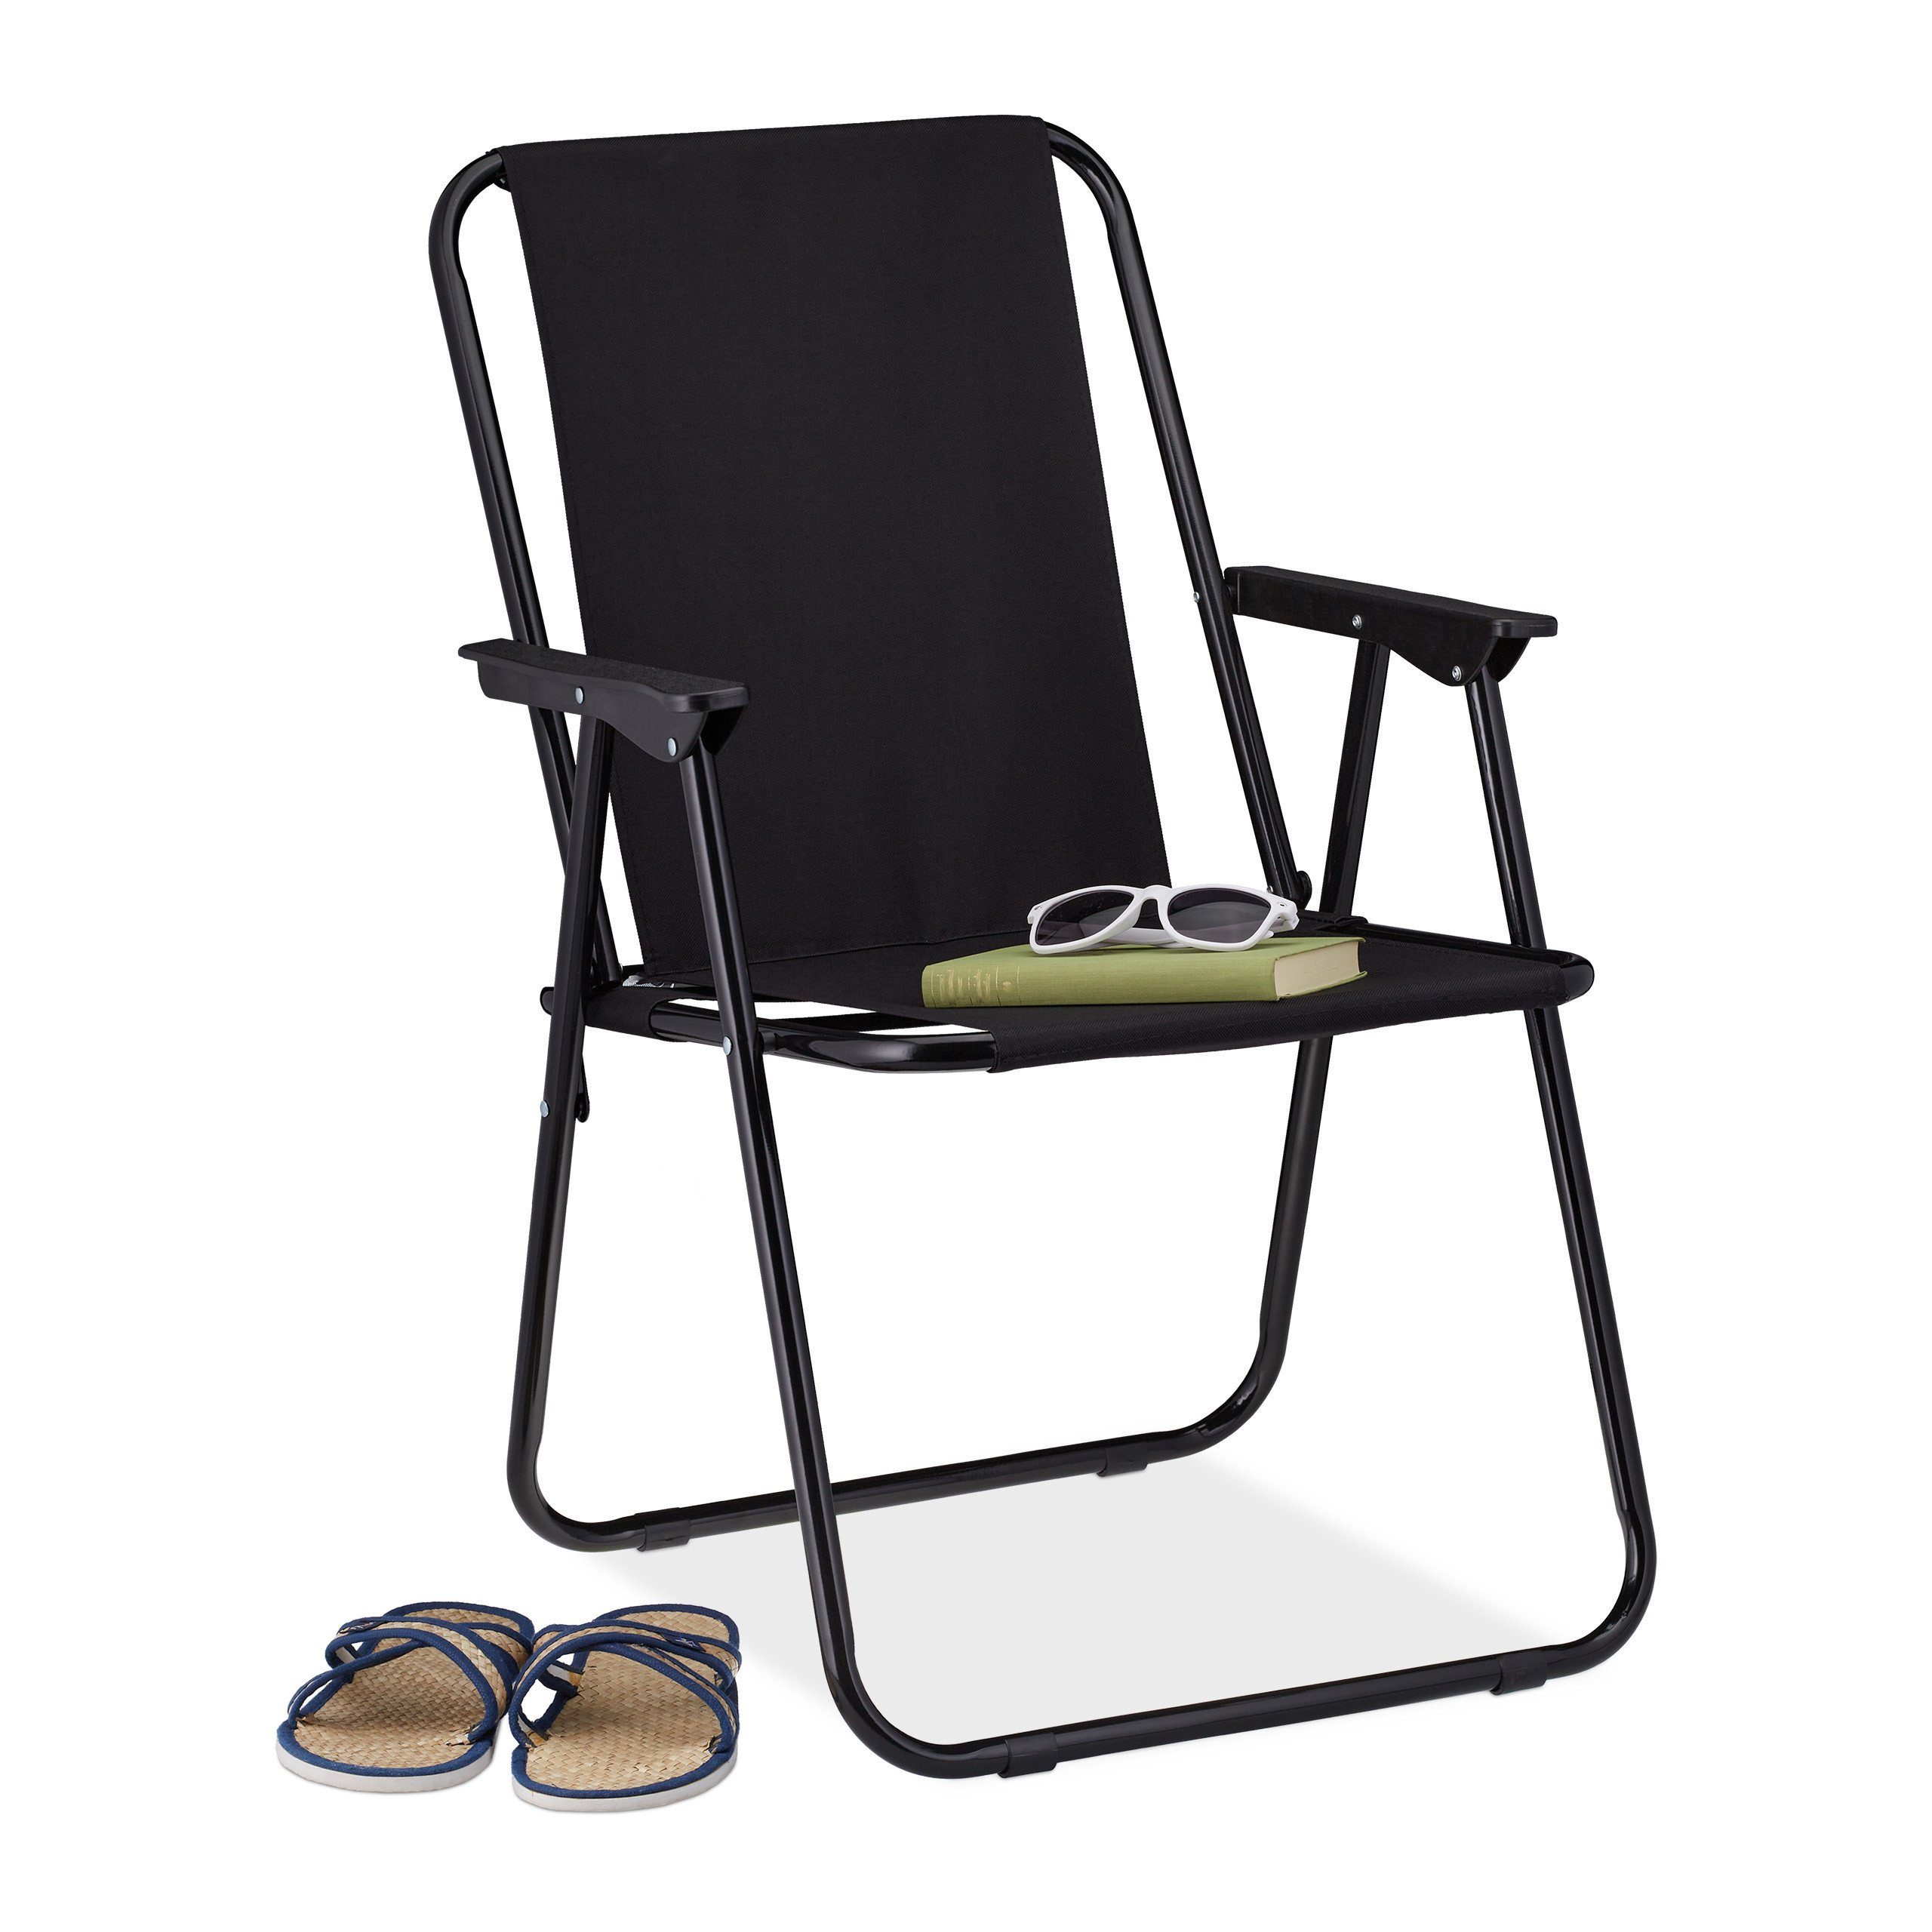 Tragbare Stühle Campingstuhl Faltstuhl Produktgewicht 1,25 kg Belastung 250 KG 